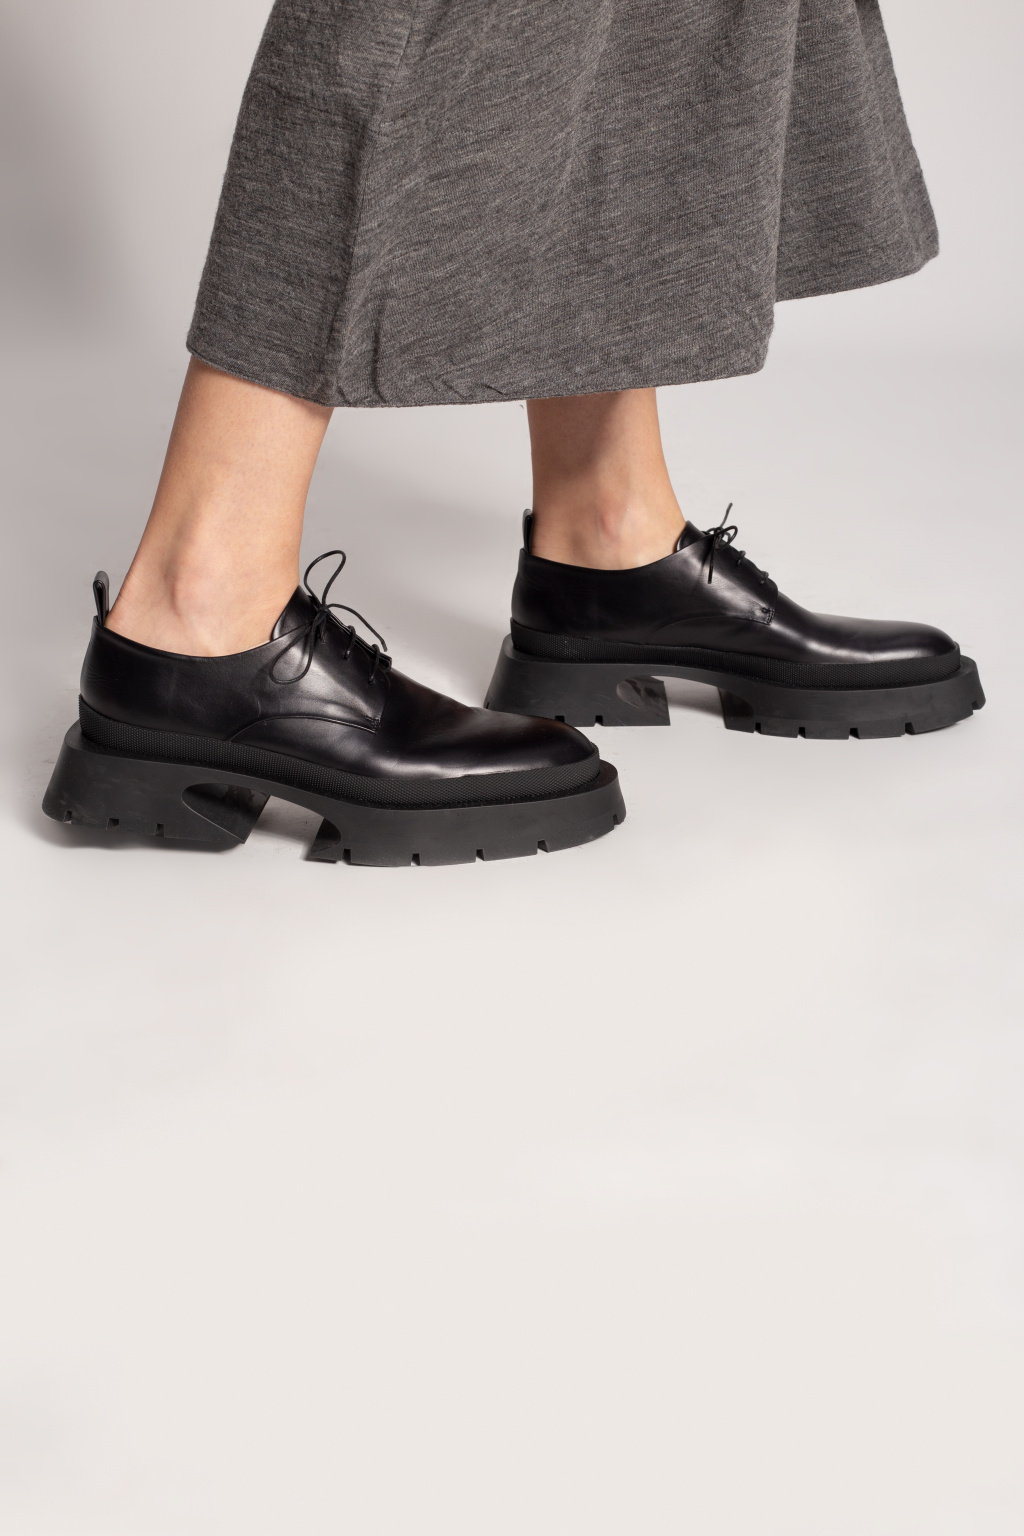 Jil Sander Wood Platform Derby Shoes Black Leather